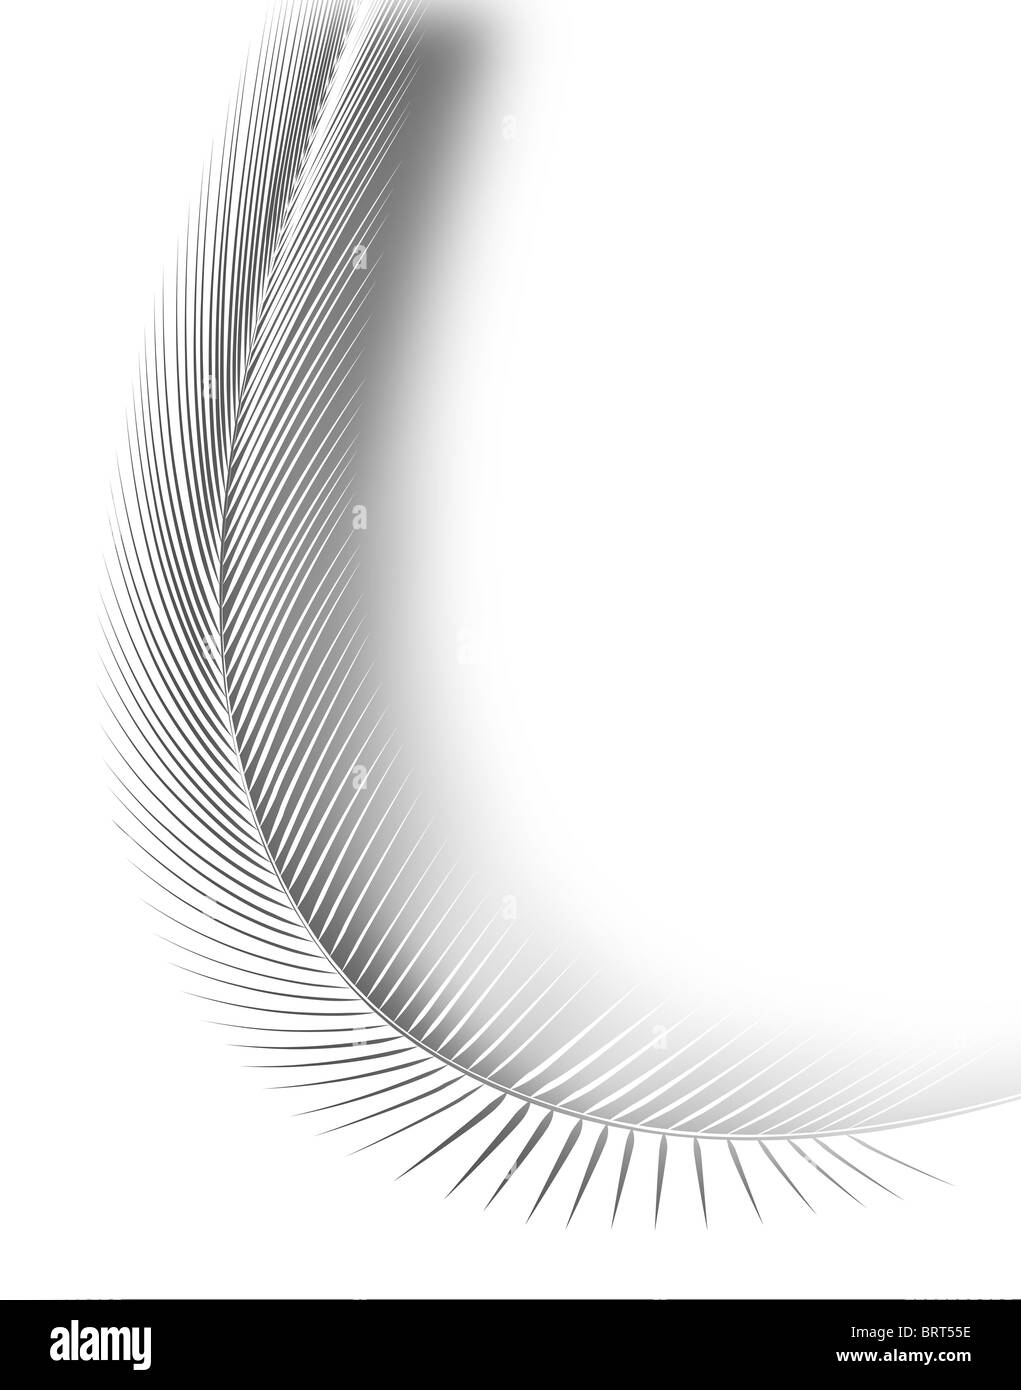 Illustrazione astratta di un intaglio di piume bianche Foto Stock